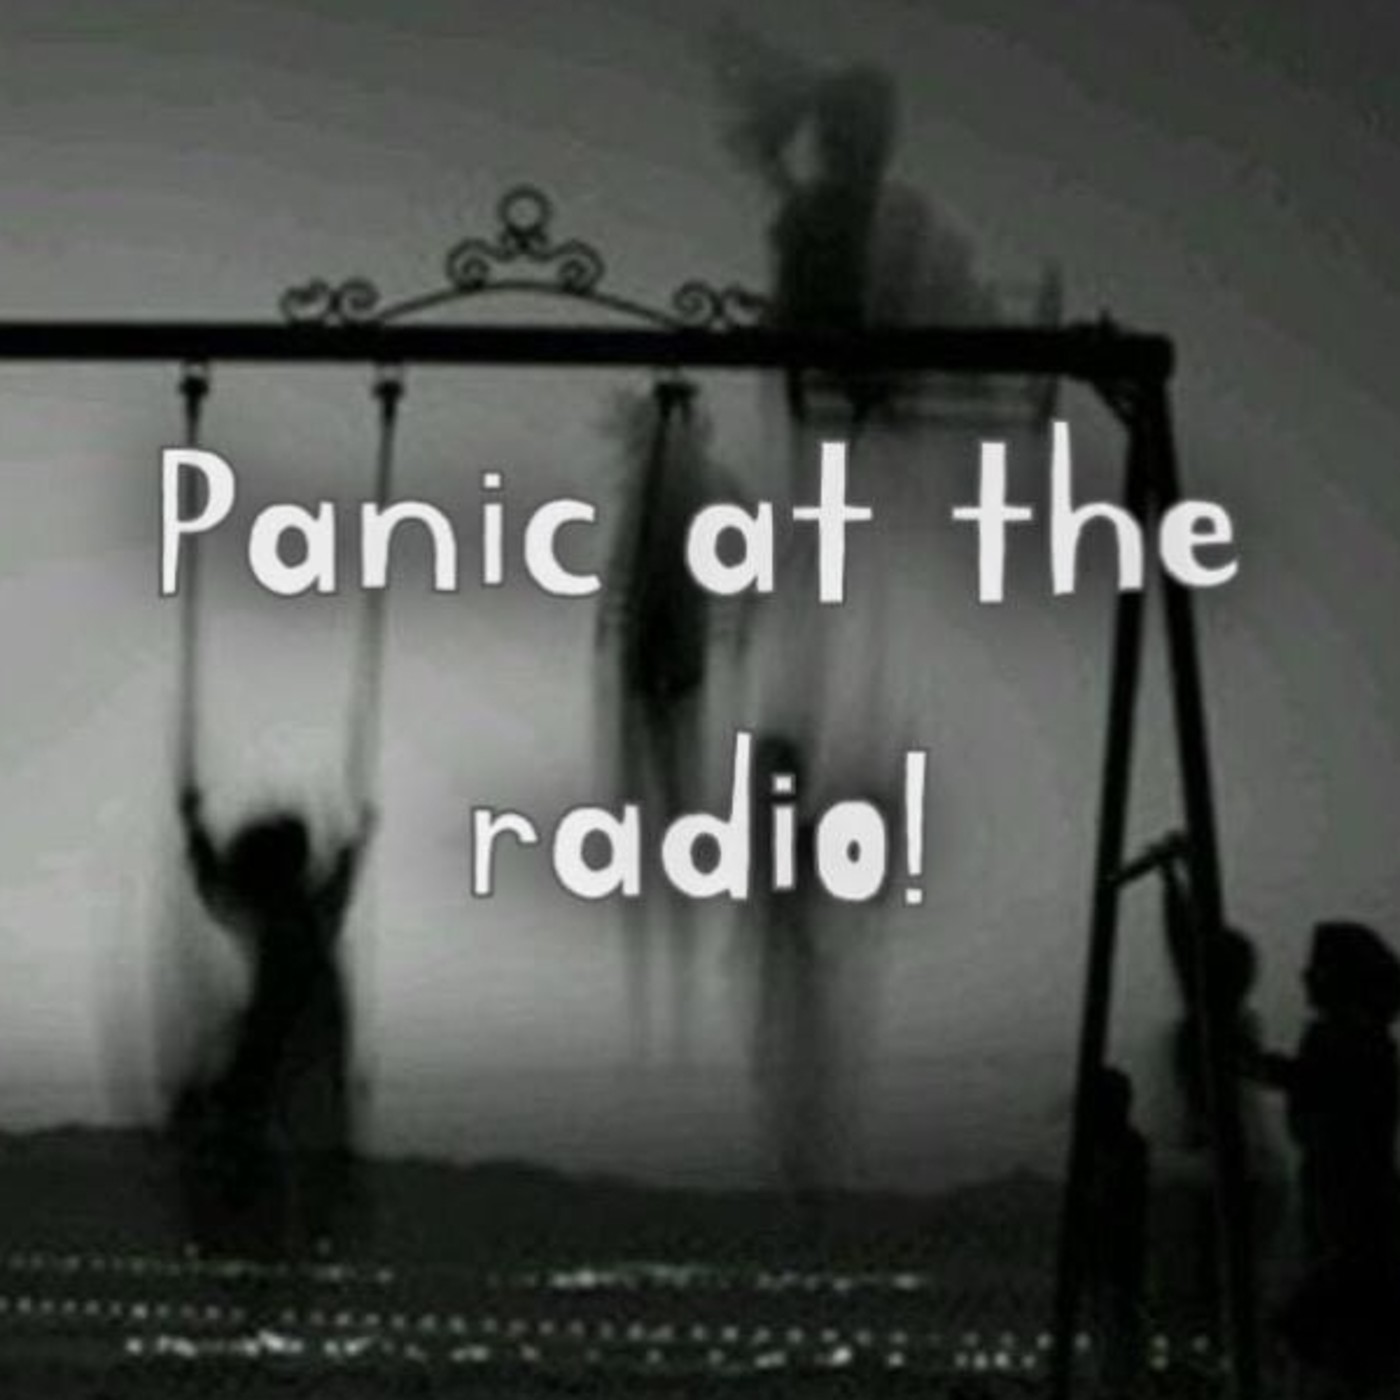 Panic at the radio!